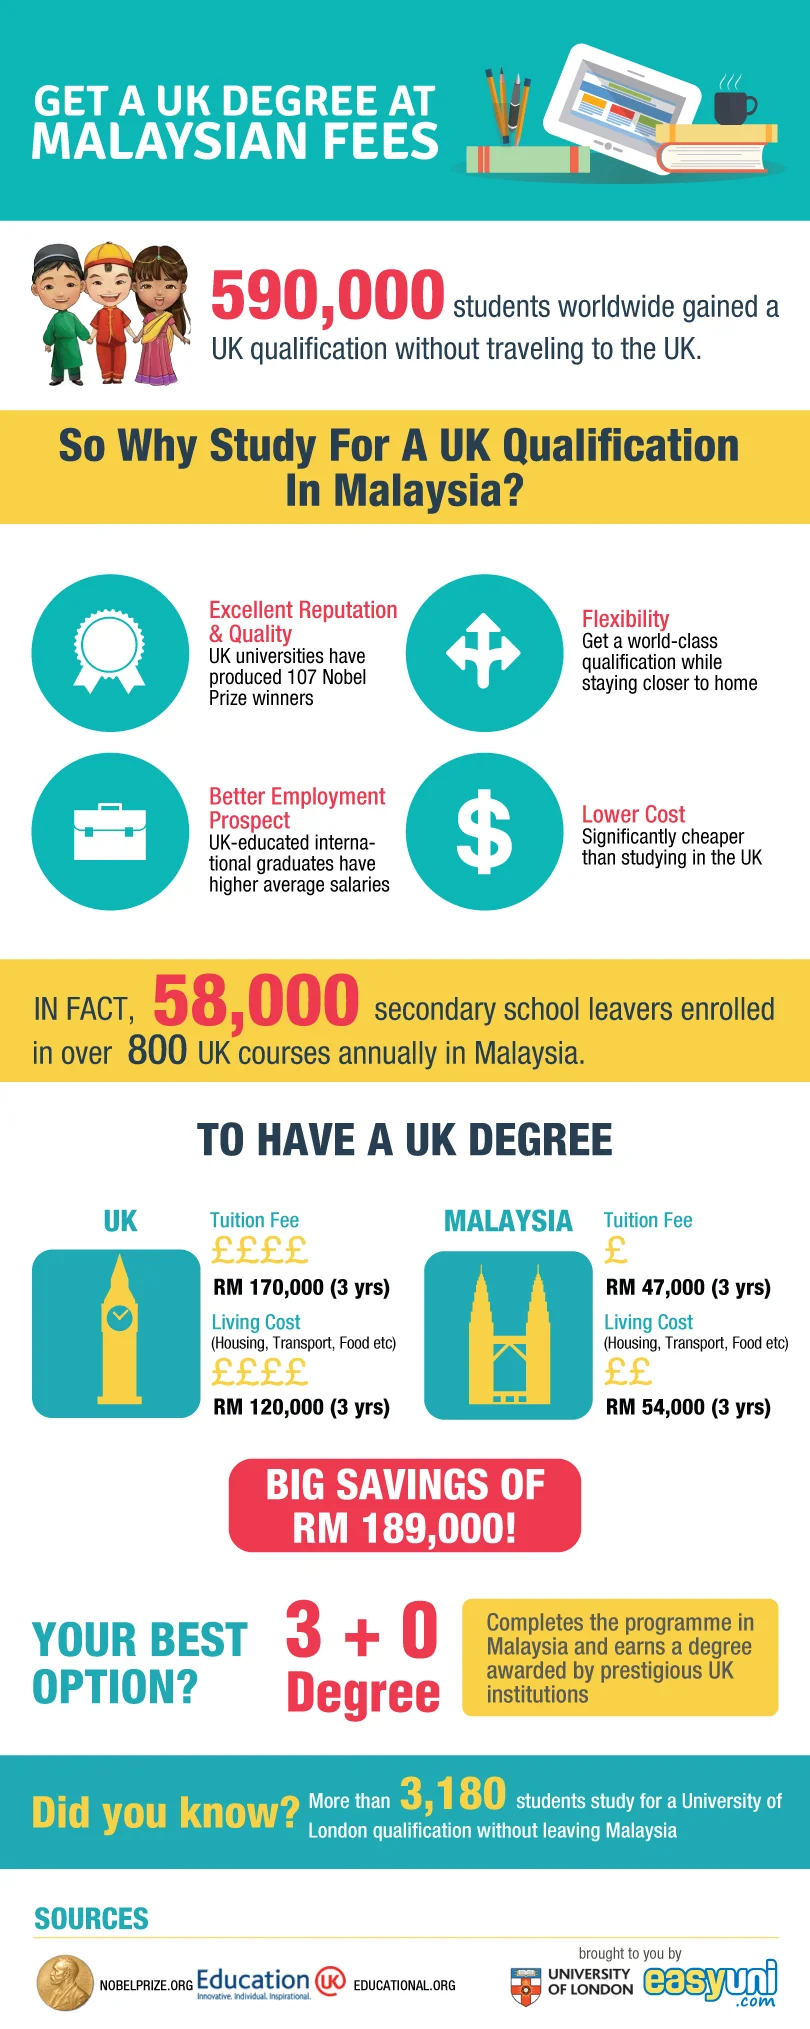 Get A UK Degree at Malaysian Fees